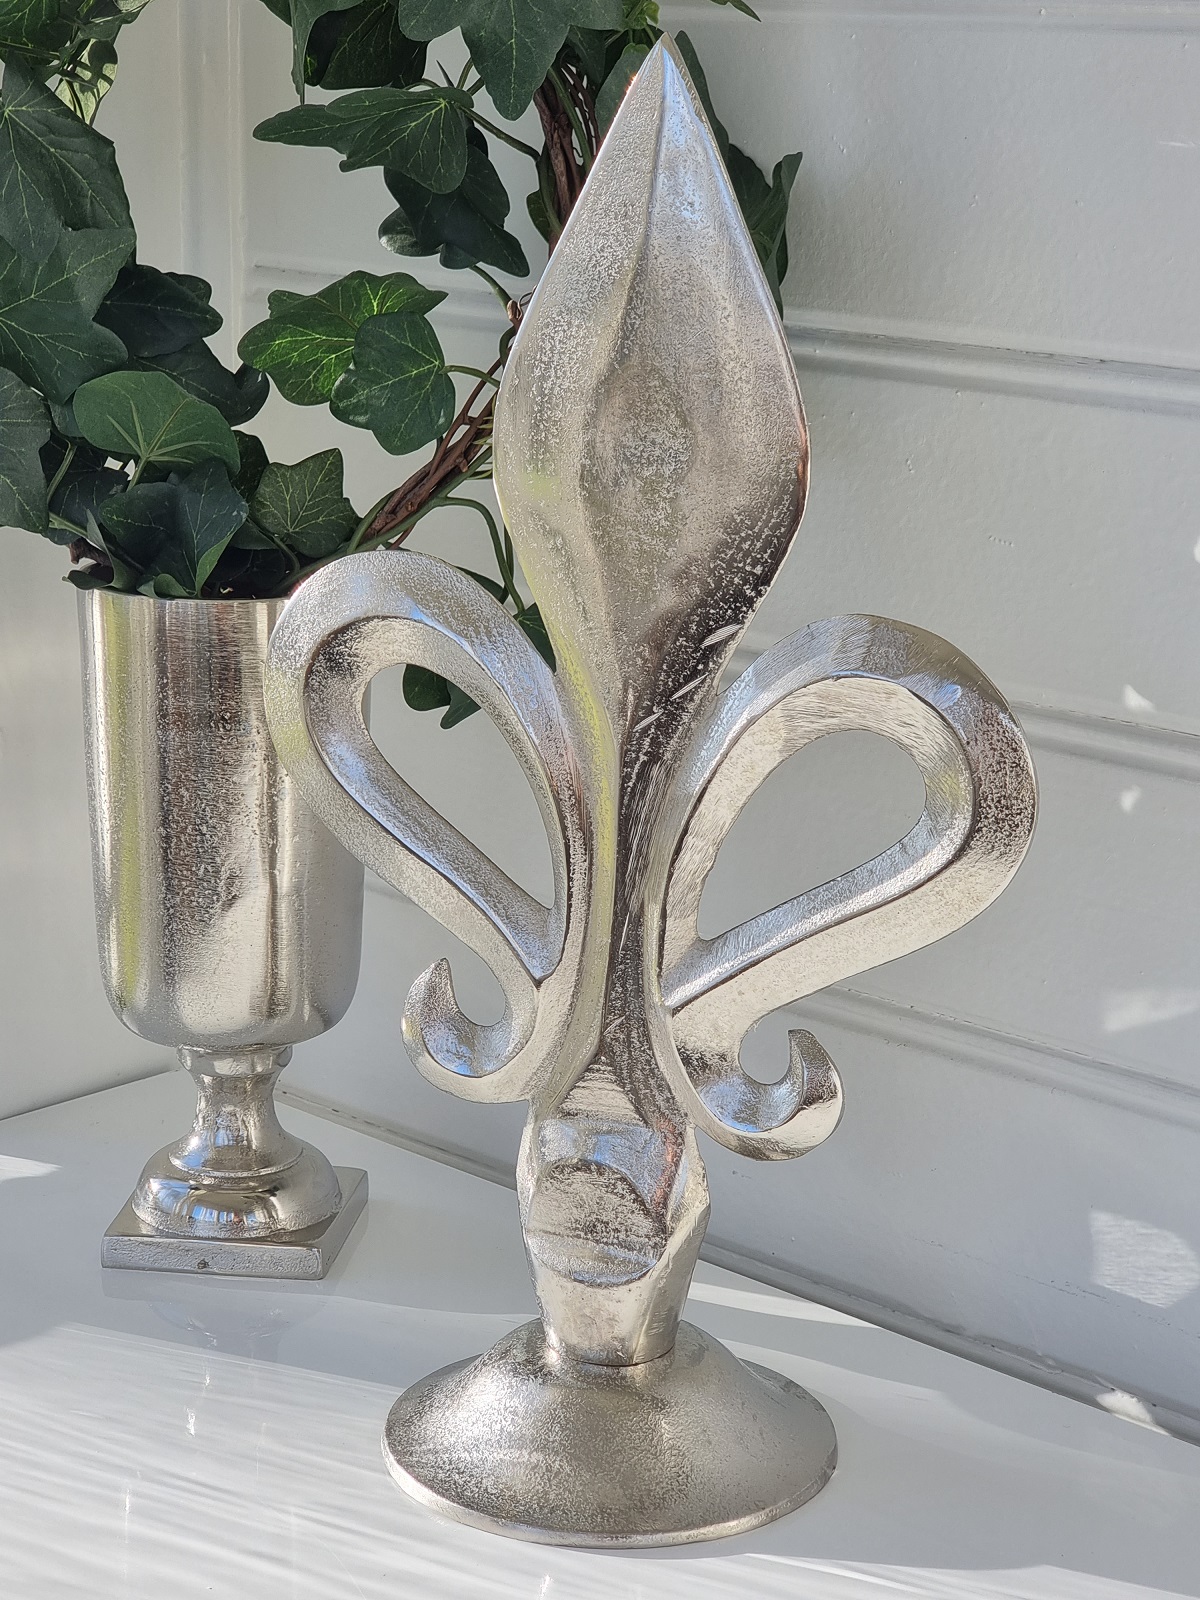 Fransk lilja prydnadsfigur i silver. Besök blickfång.se